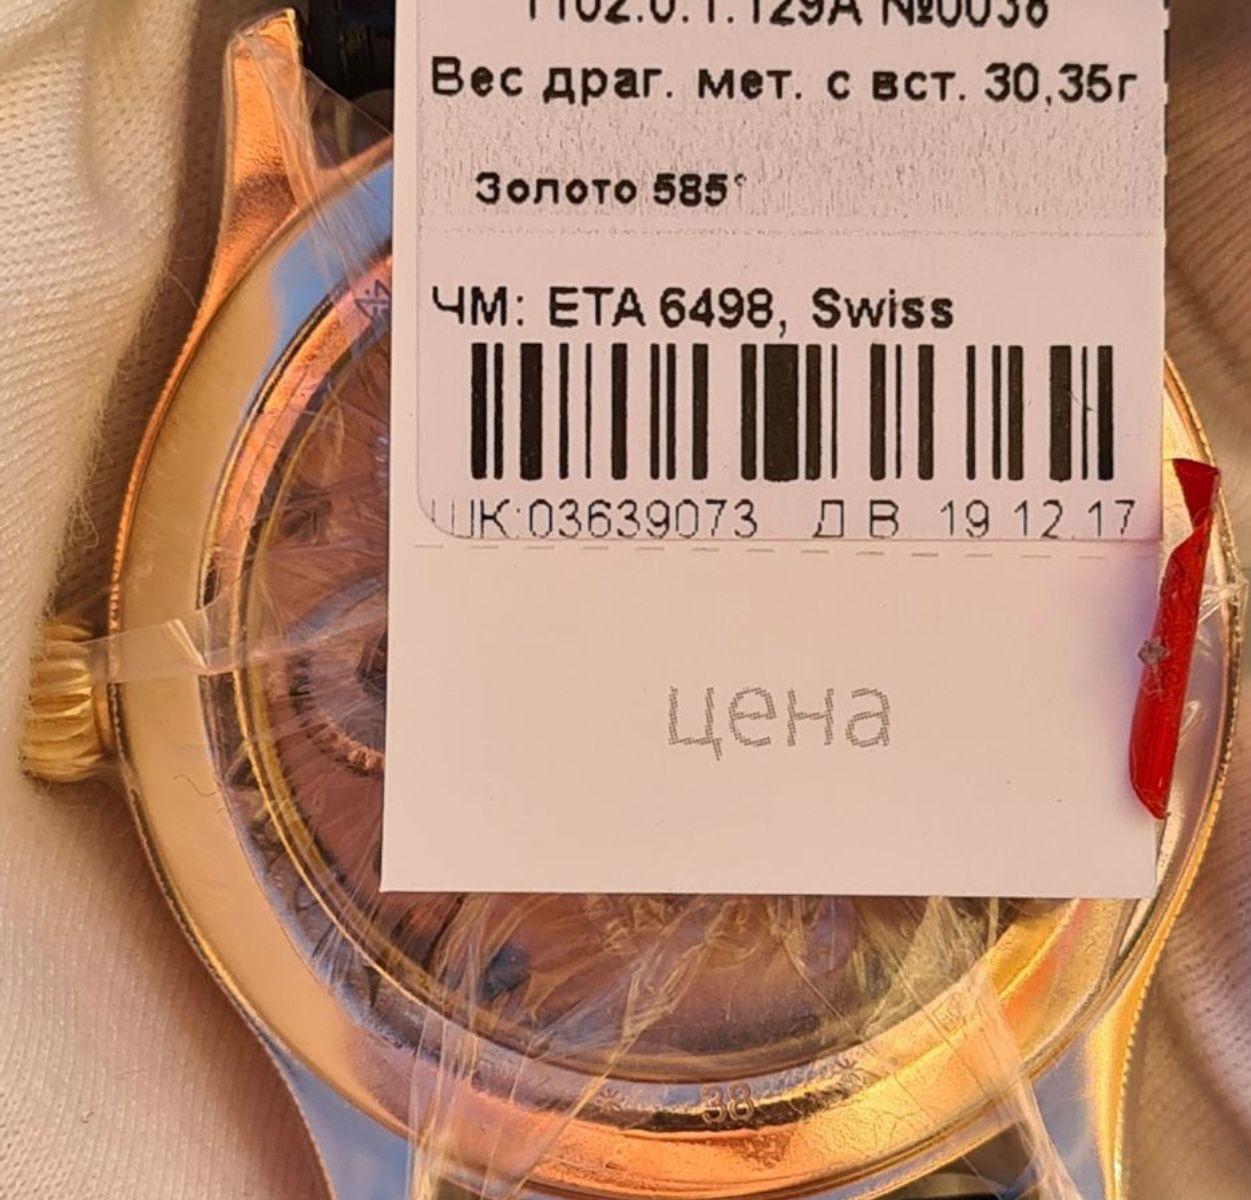 Đồng hồ Nga Nika vàng đúc nguyên khối Nika 585 1102.0.1.128A